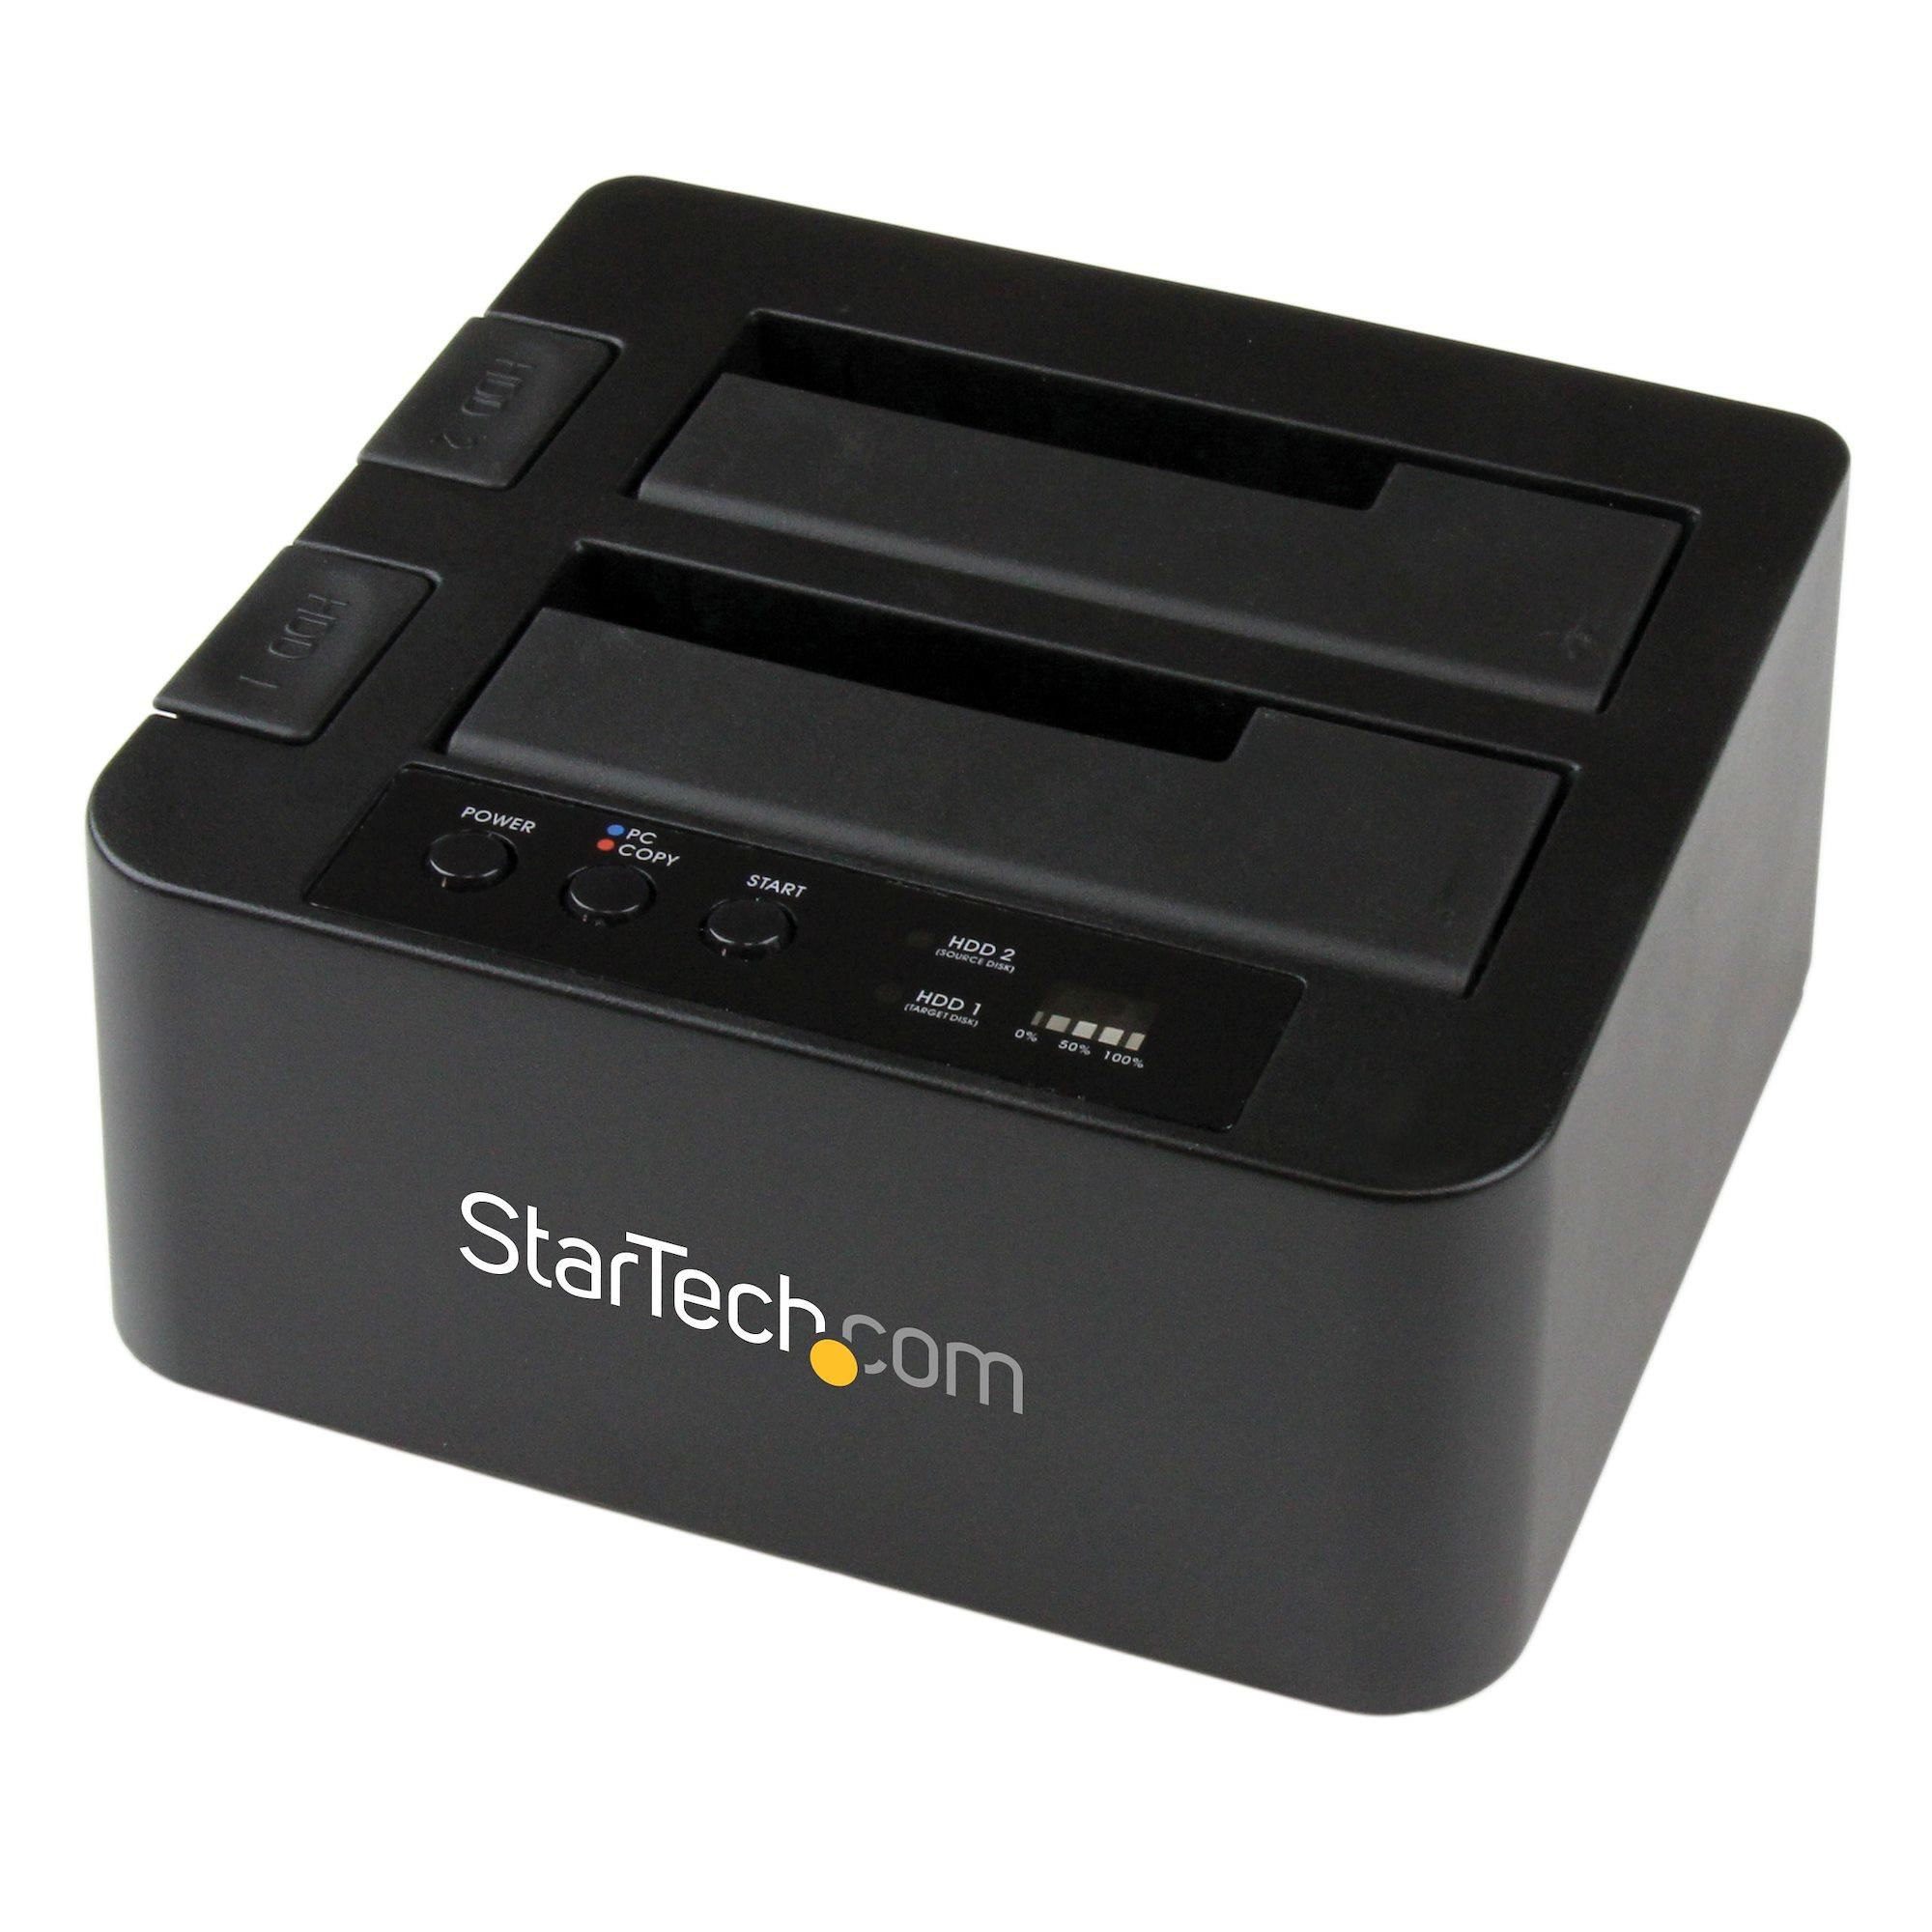 StarTech.com Usb 3.0 /